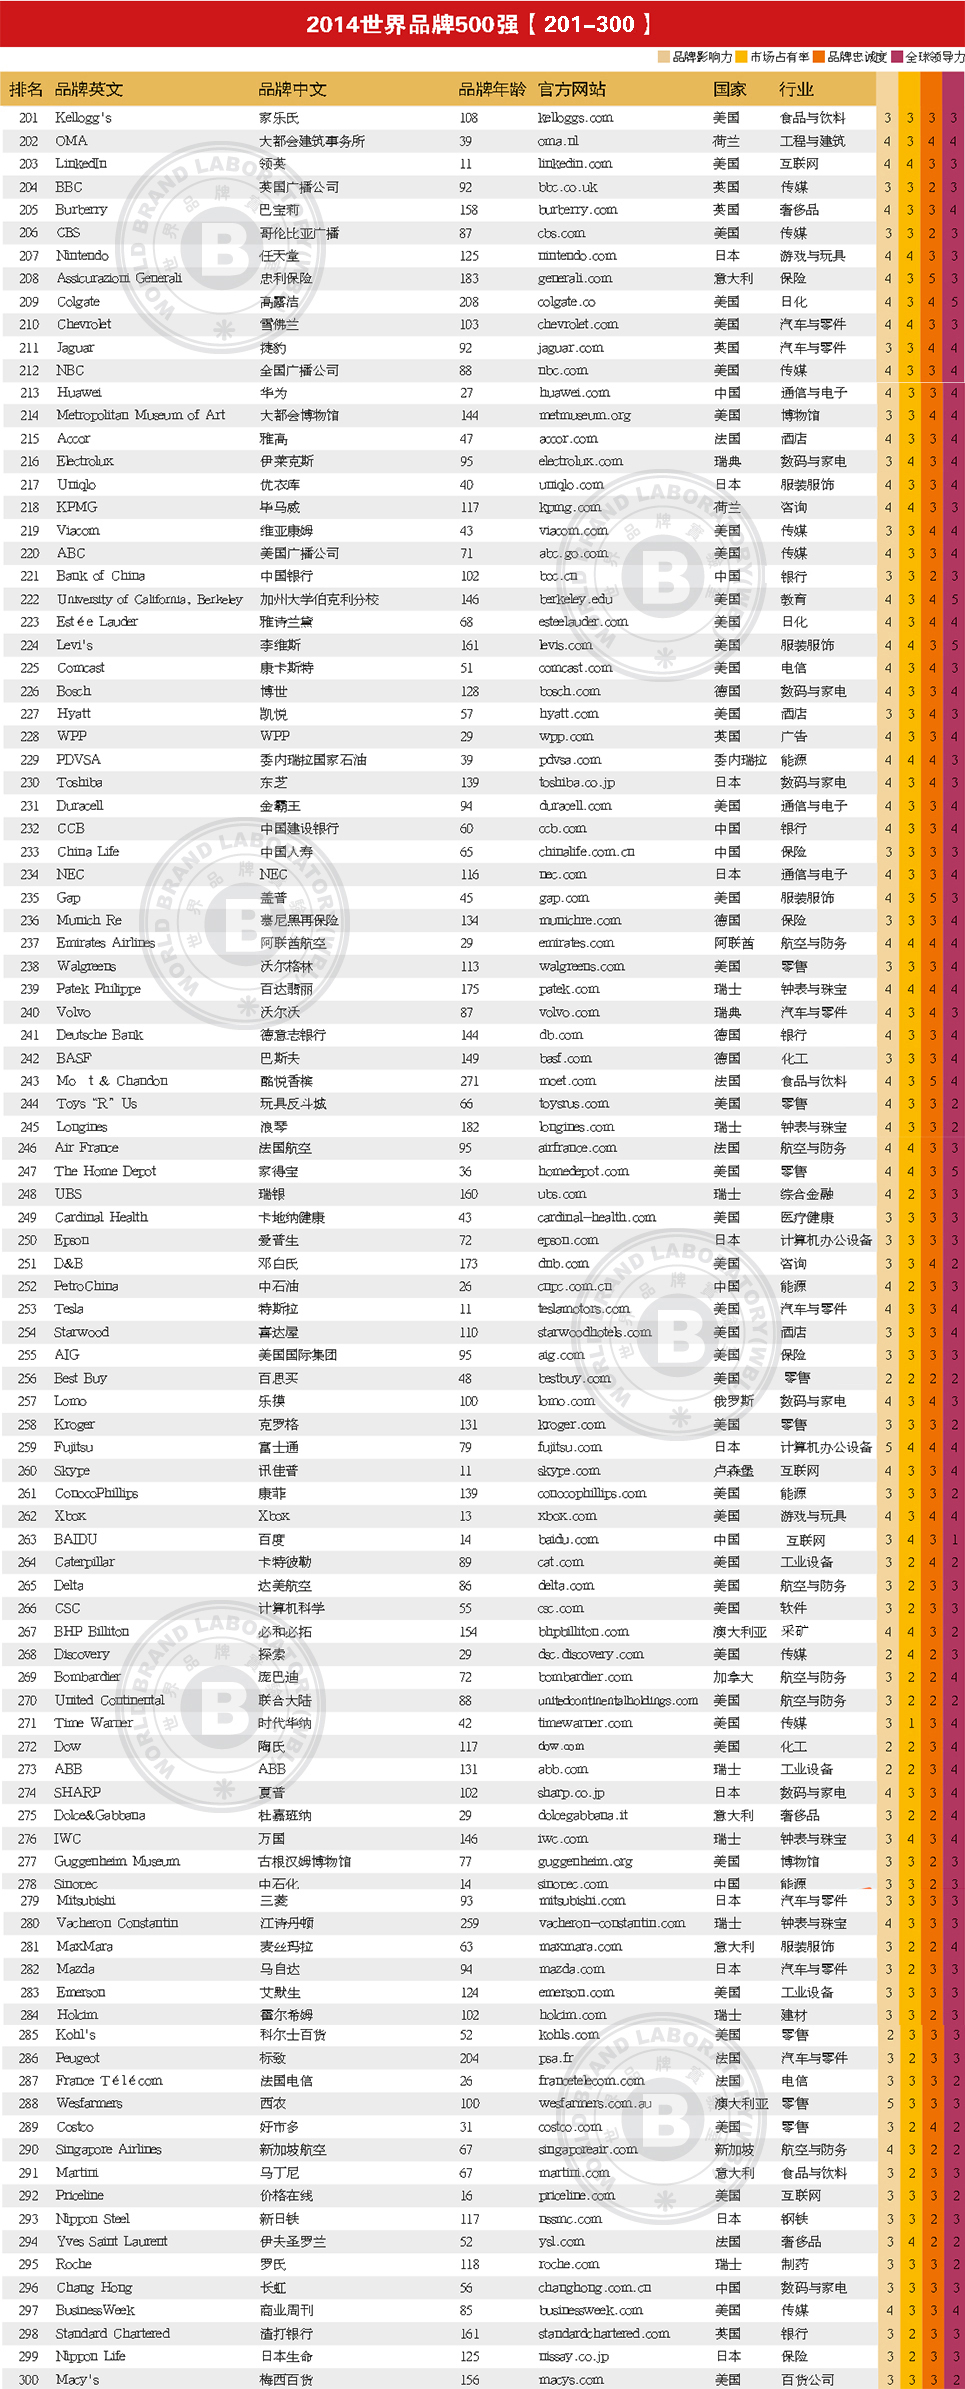 2014年世界品牌500强排行榜名单(201-300名)